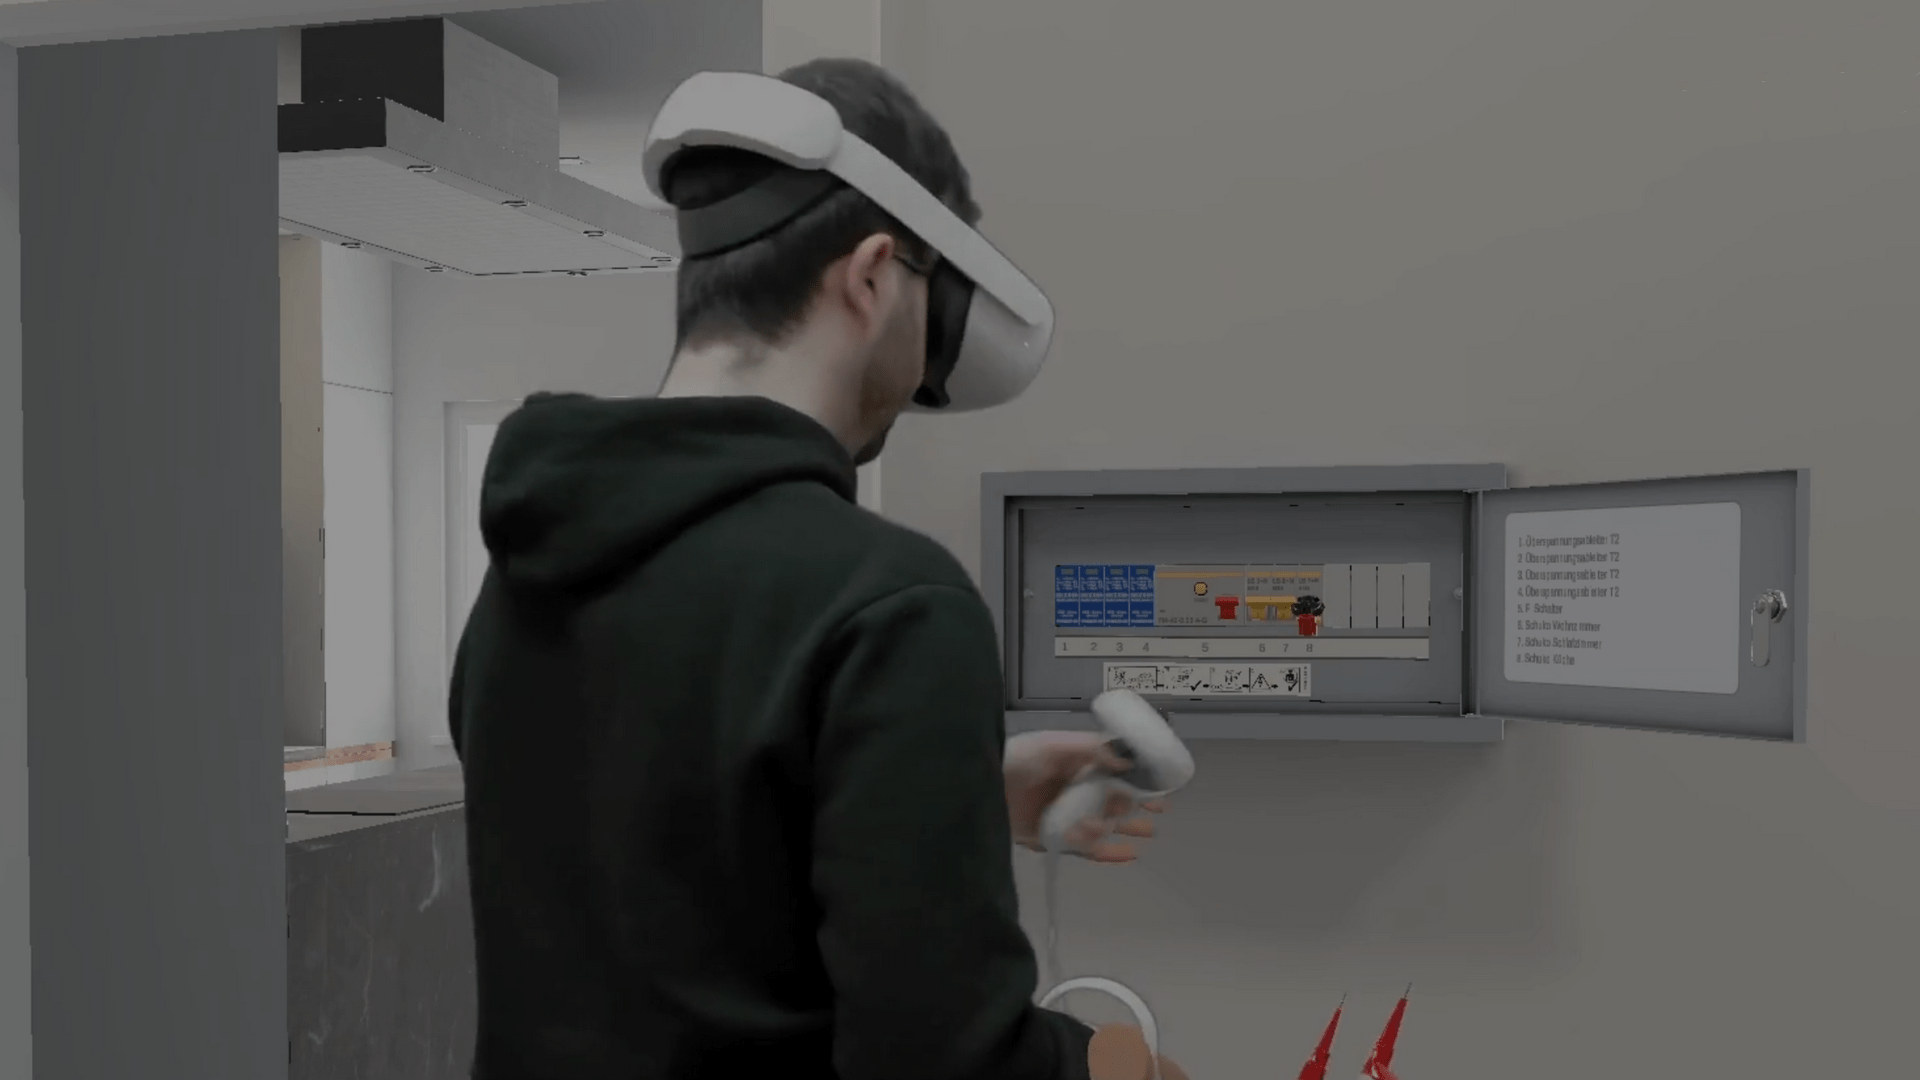 Schüler mit VR-Brille Meta Quest 2 in virtueller Umgebung vor Schaltkasten